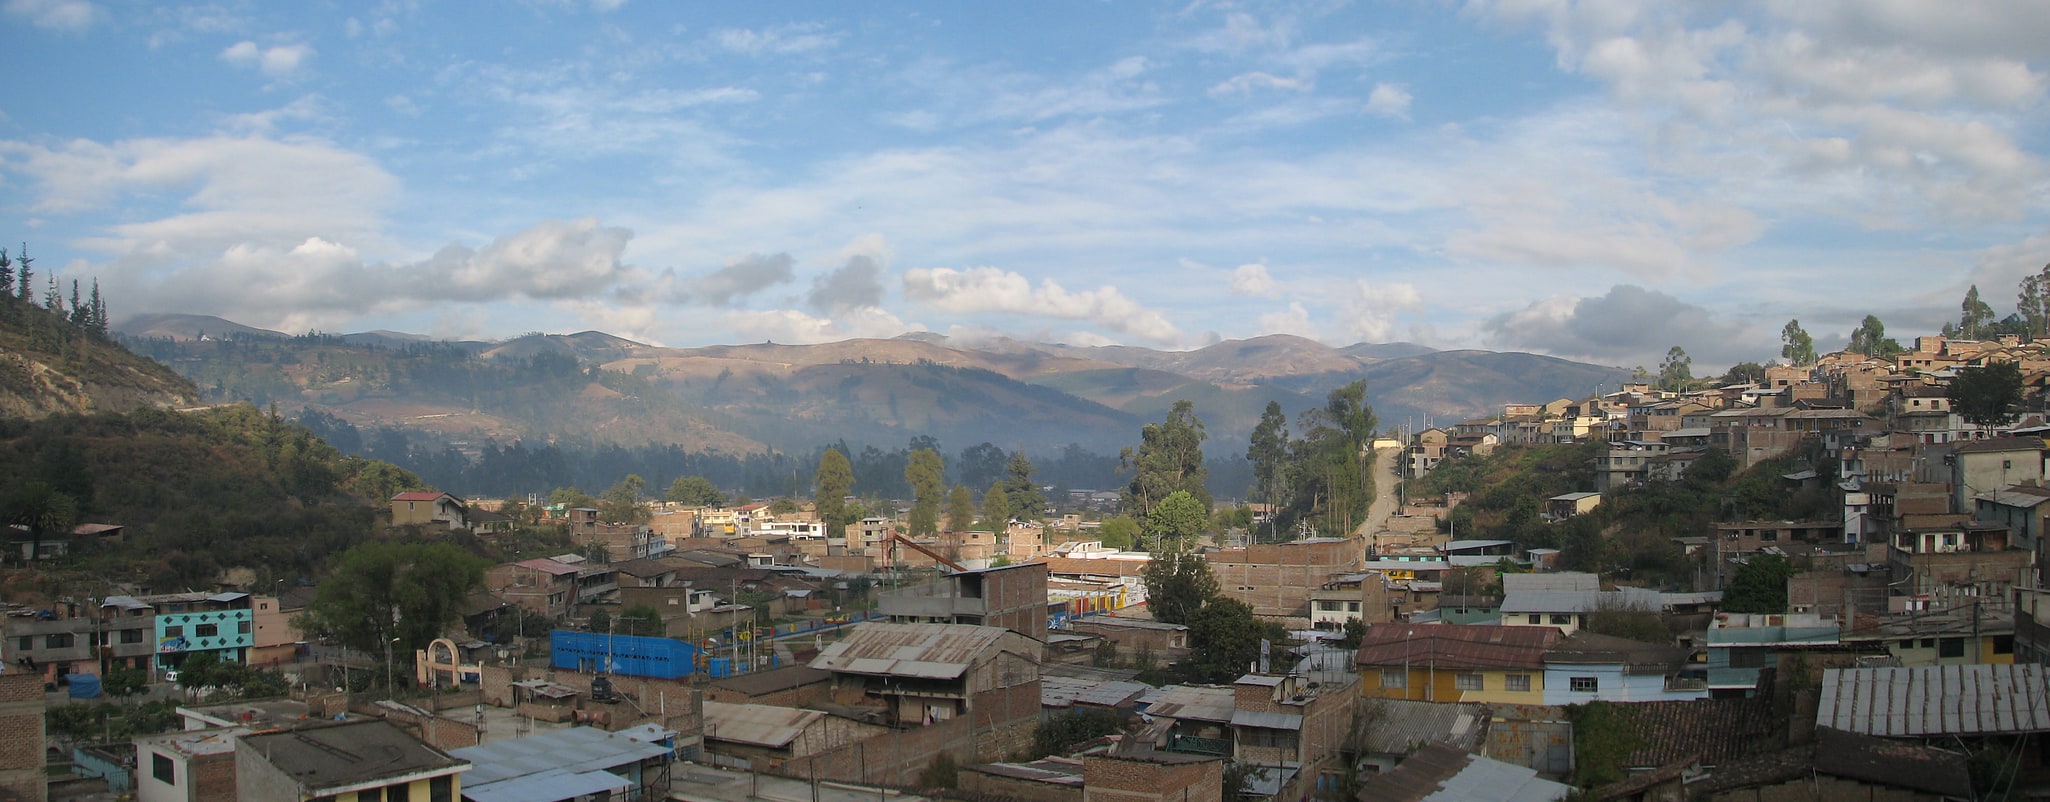 Andahuaylas, Peru